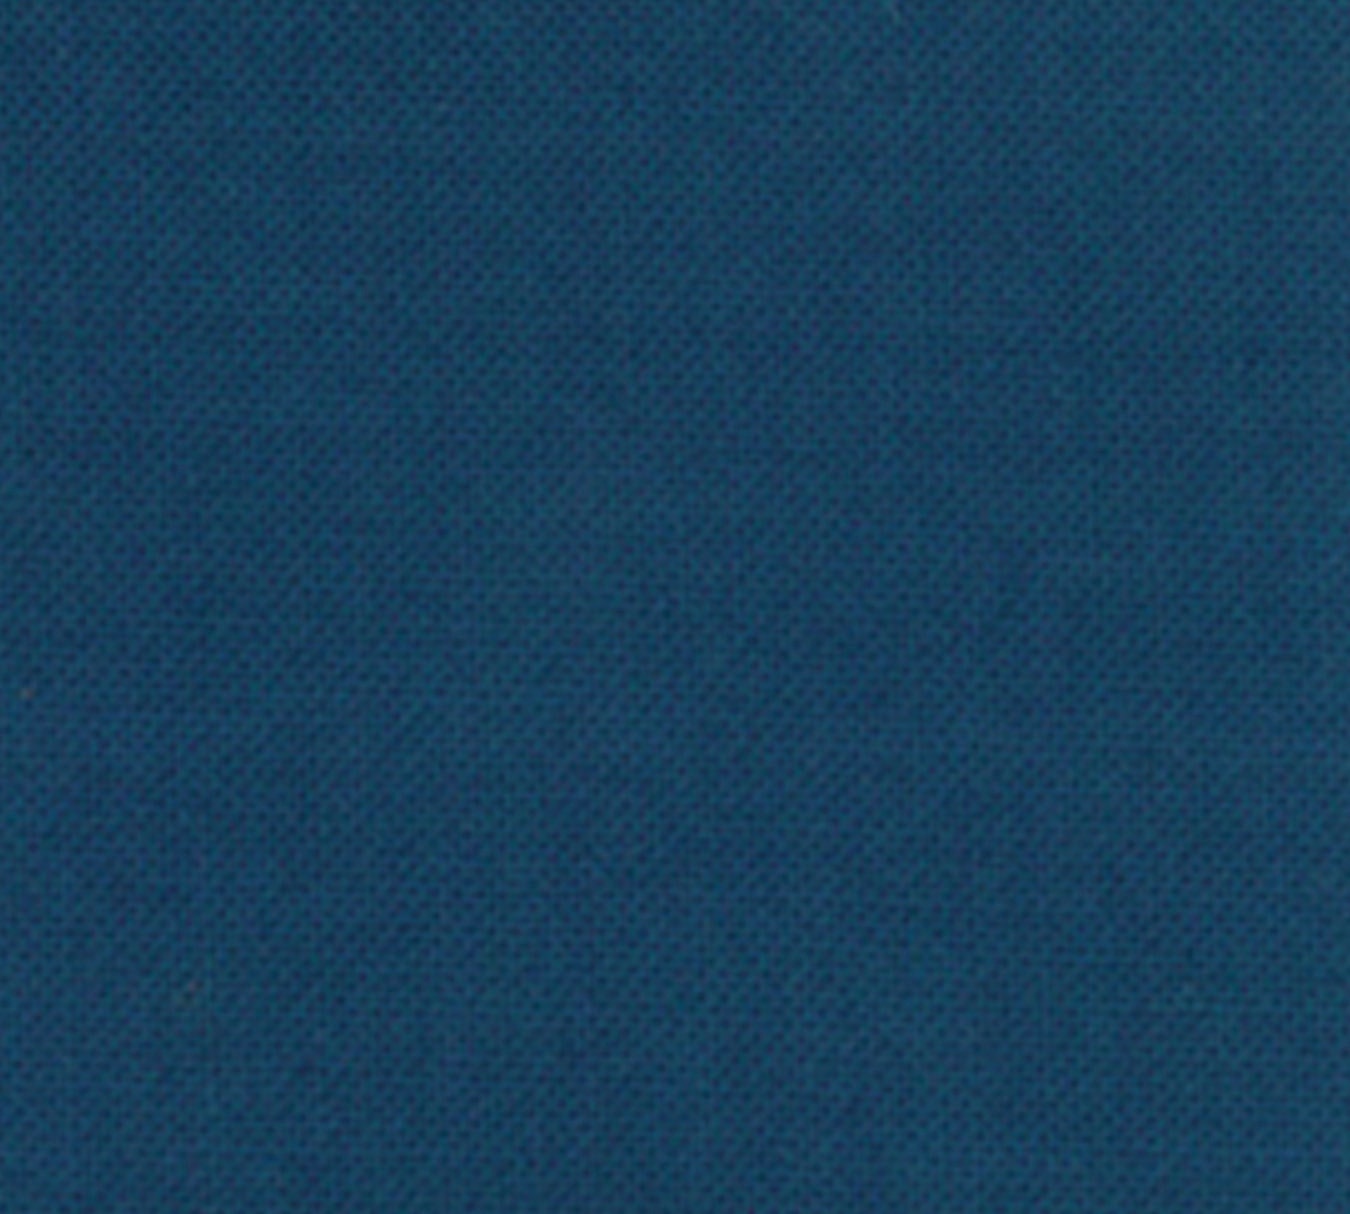 Seletøj patois Uenighed Prussian Blue 9900 271 Moda Bella Solids From Moda 100% - Etsy